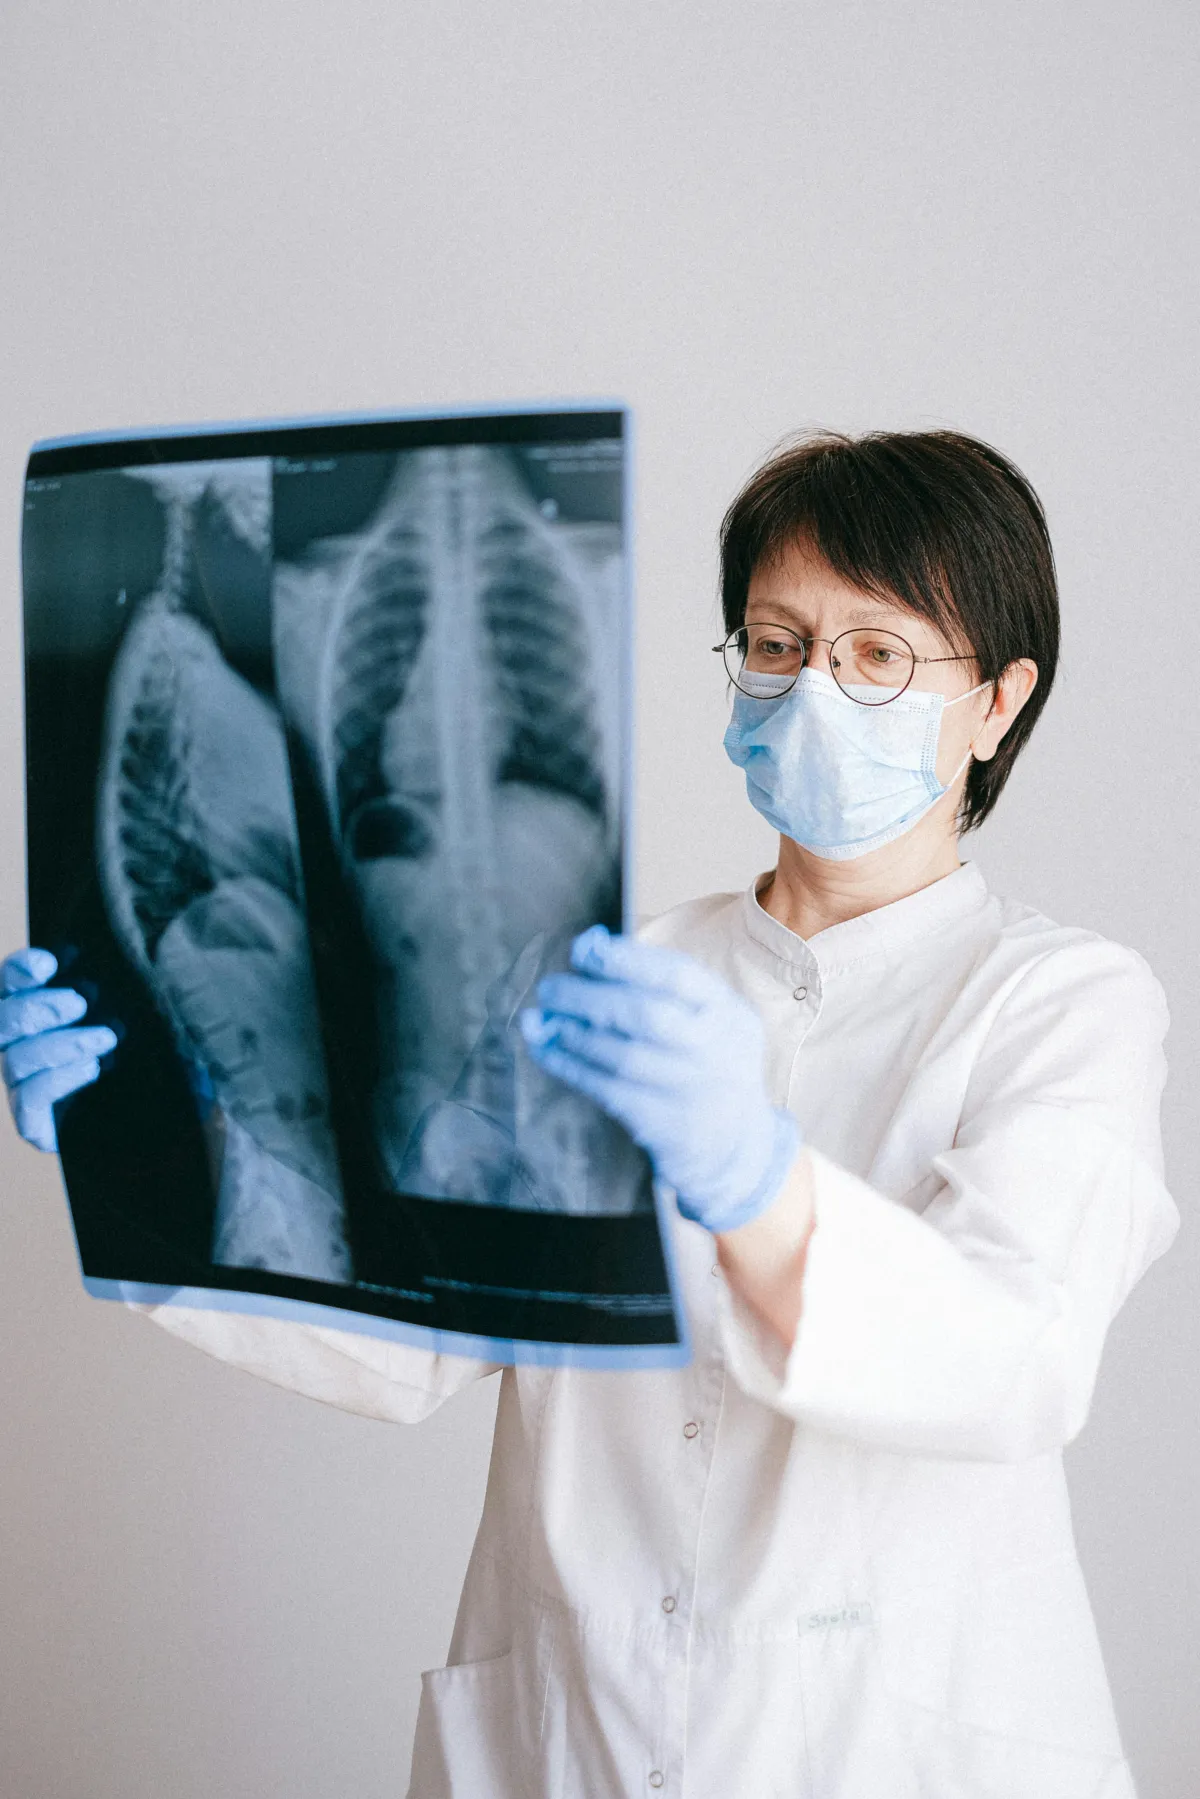 폐 x-ray엑스레이 사진을 보는 의사